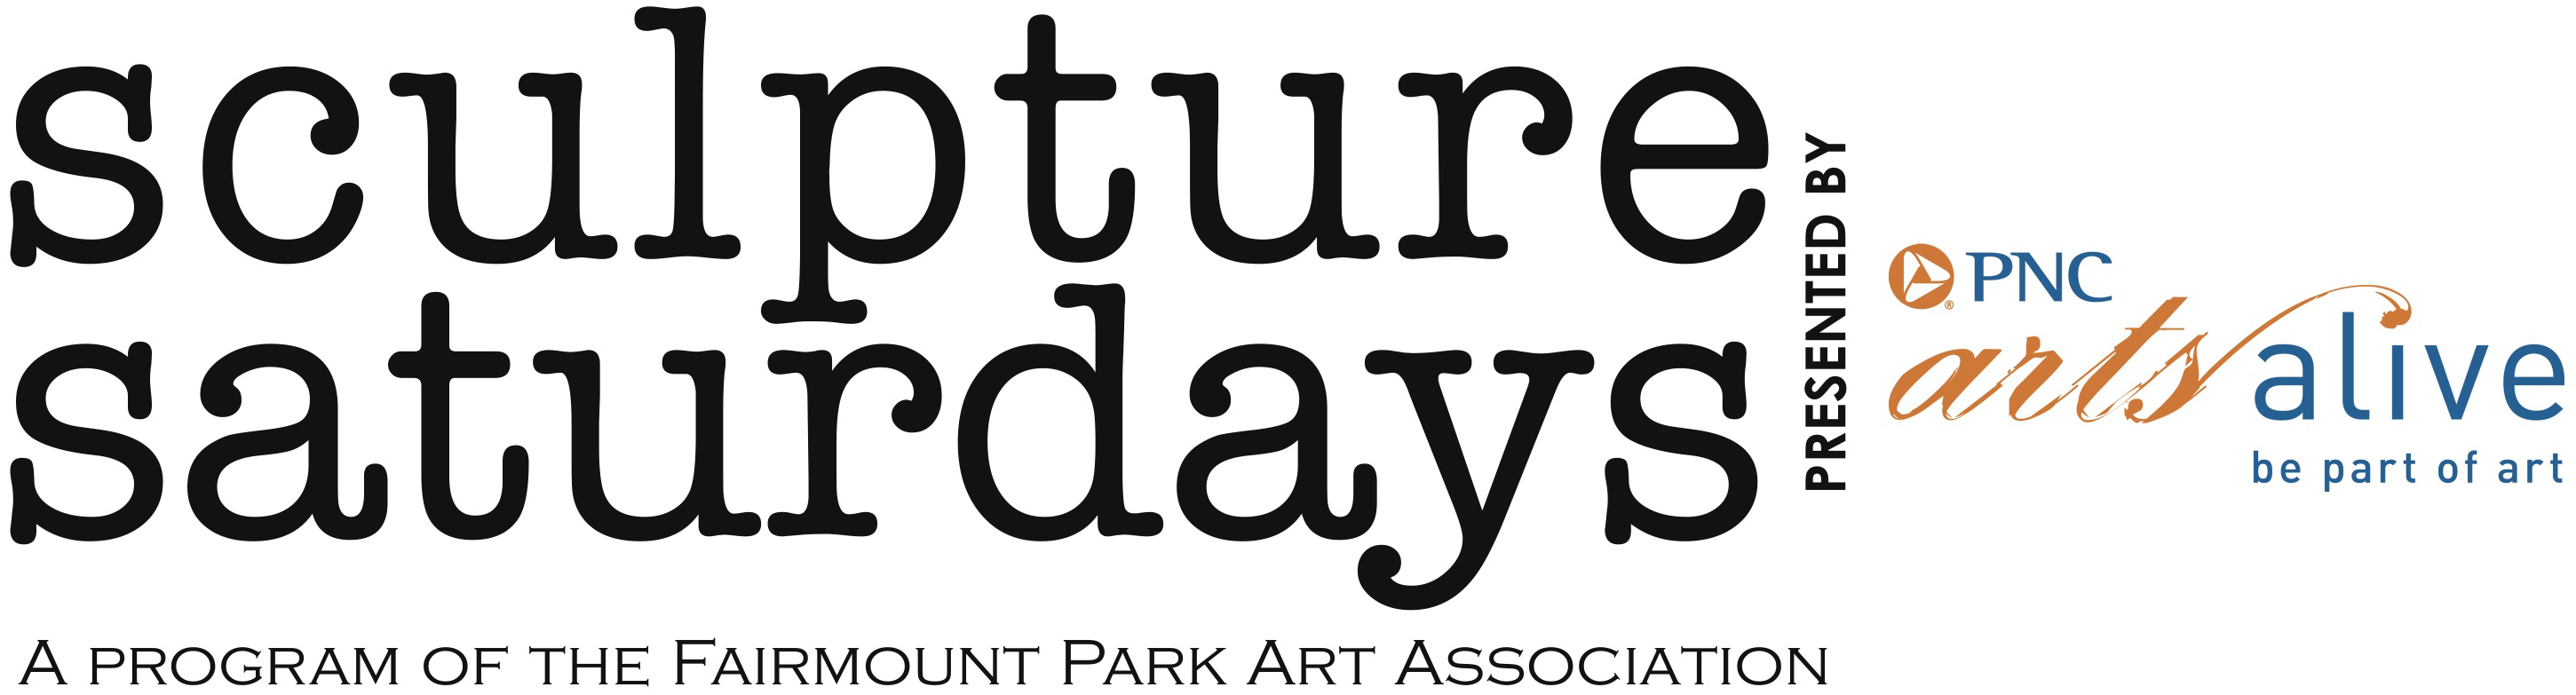 Sculpture Saturdays Logo